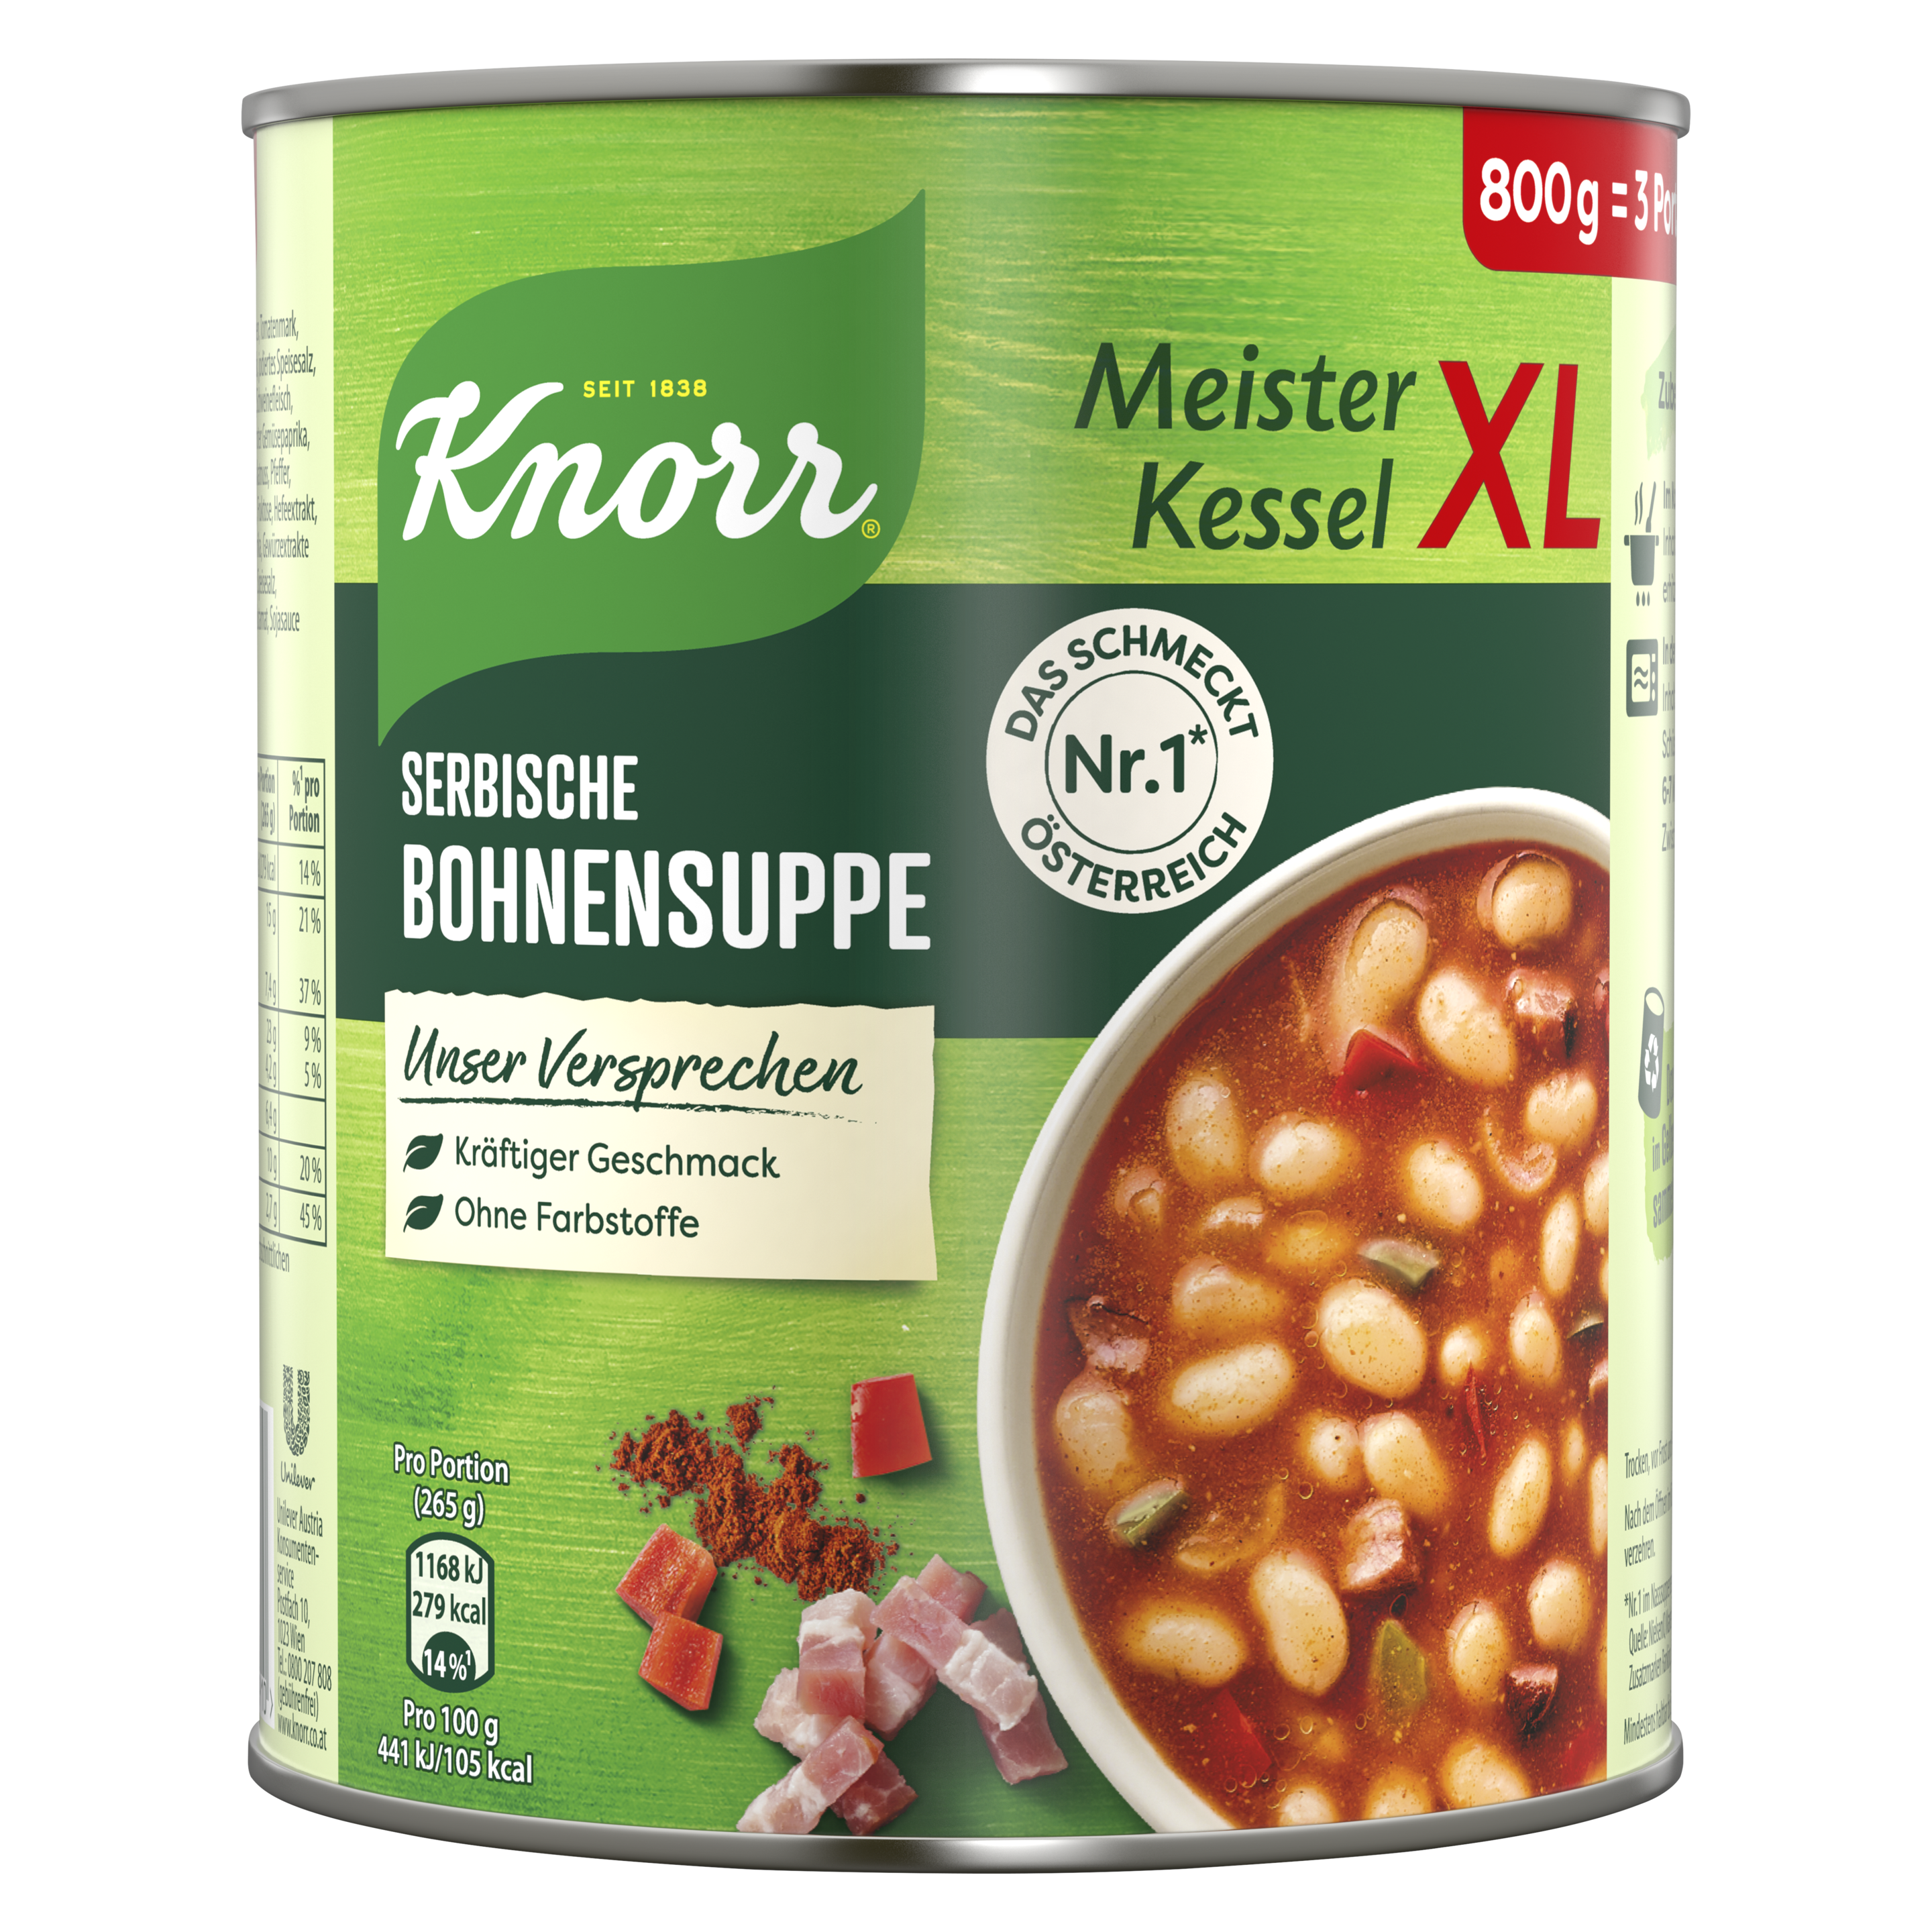 Knorr Meister Kessel XL Serbische Bohnensuppe 800 g